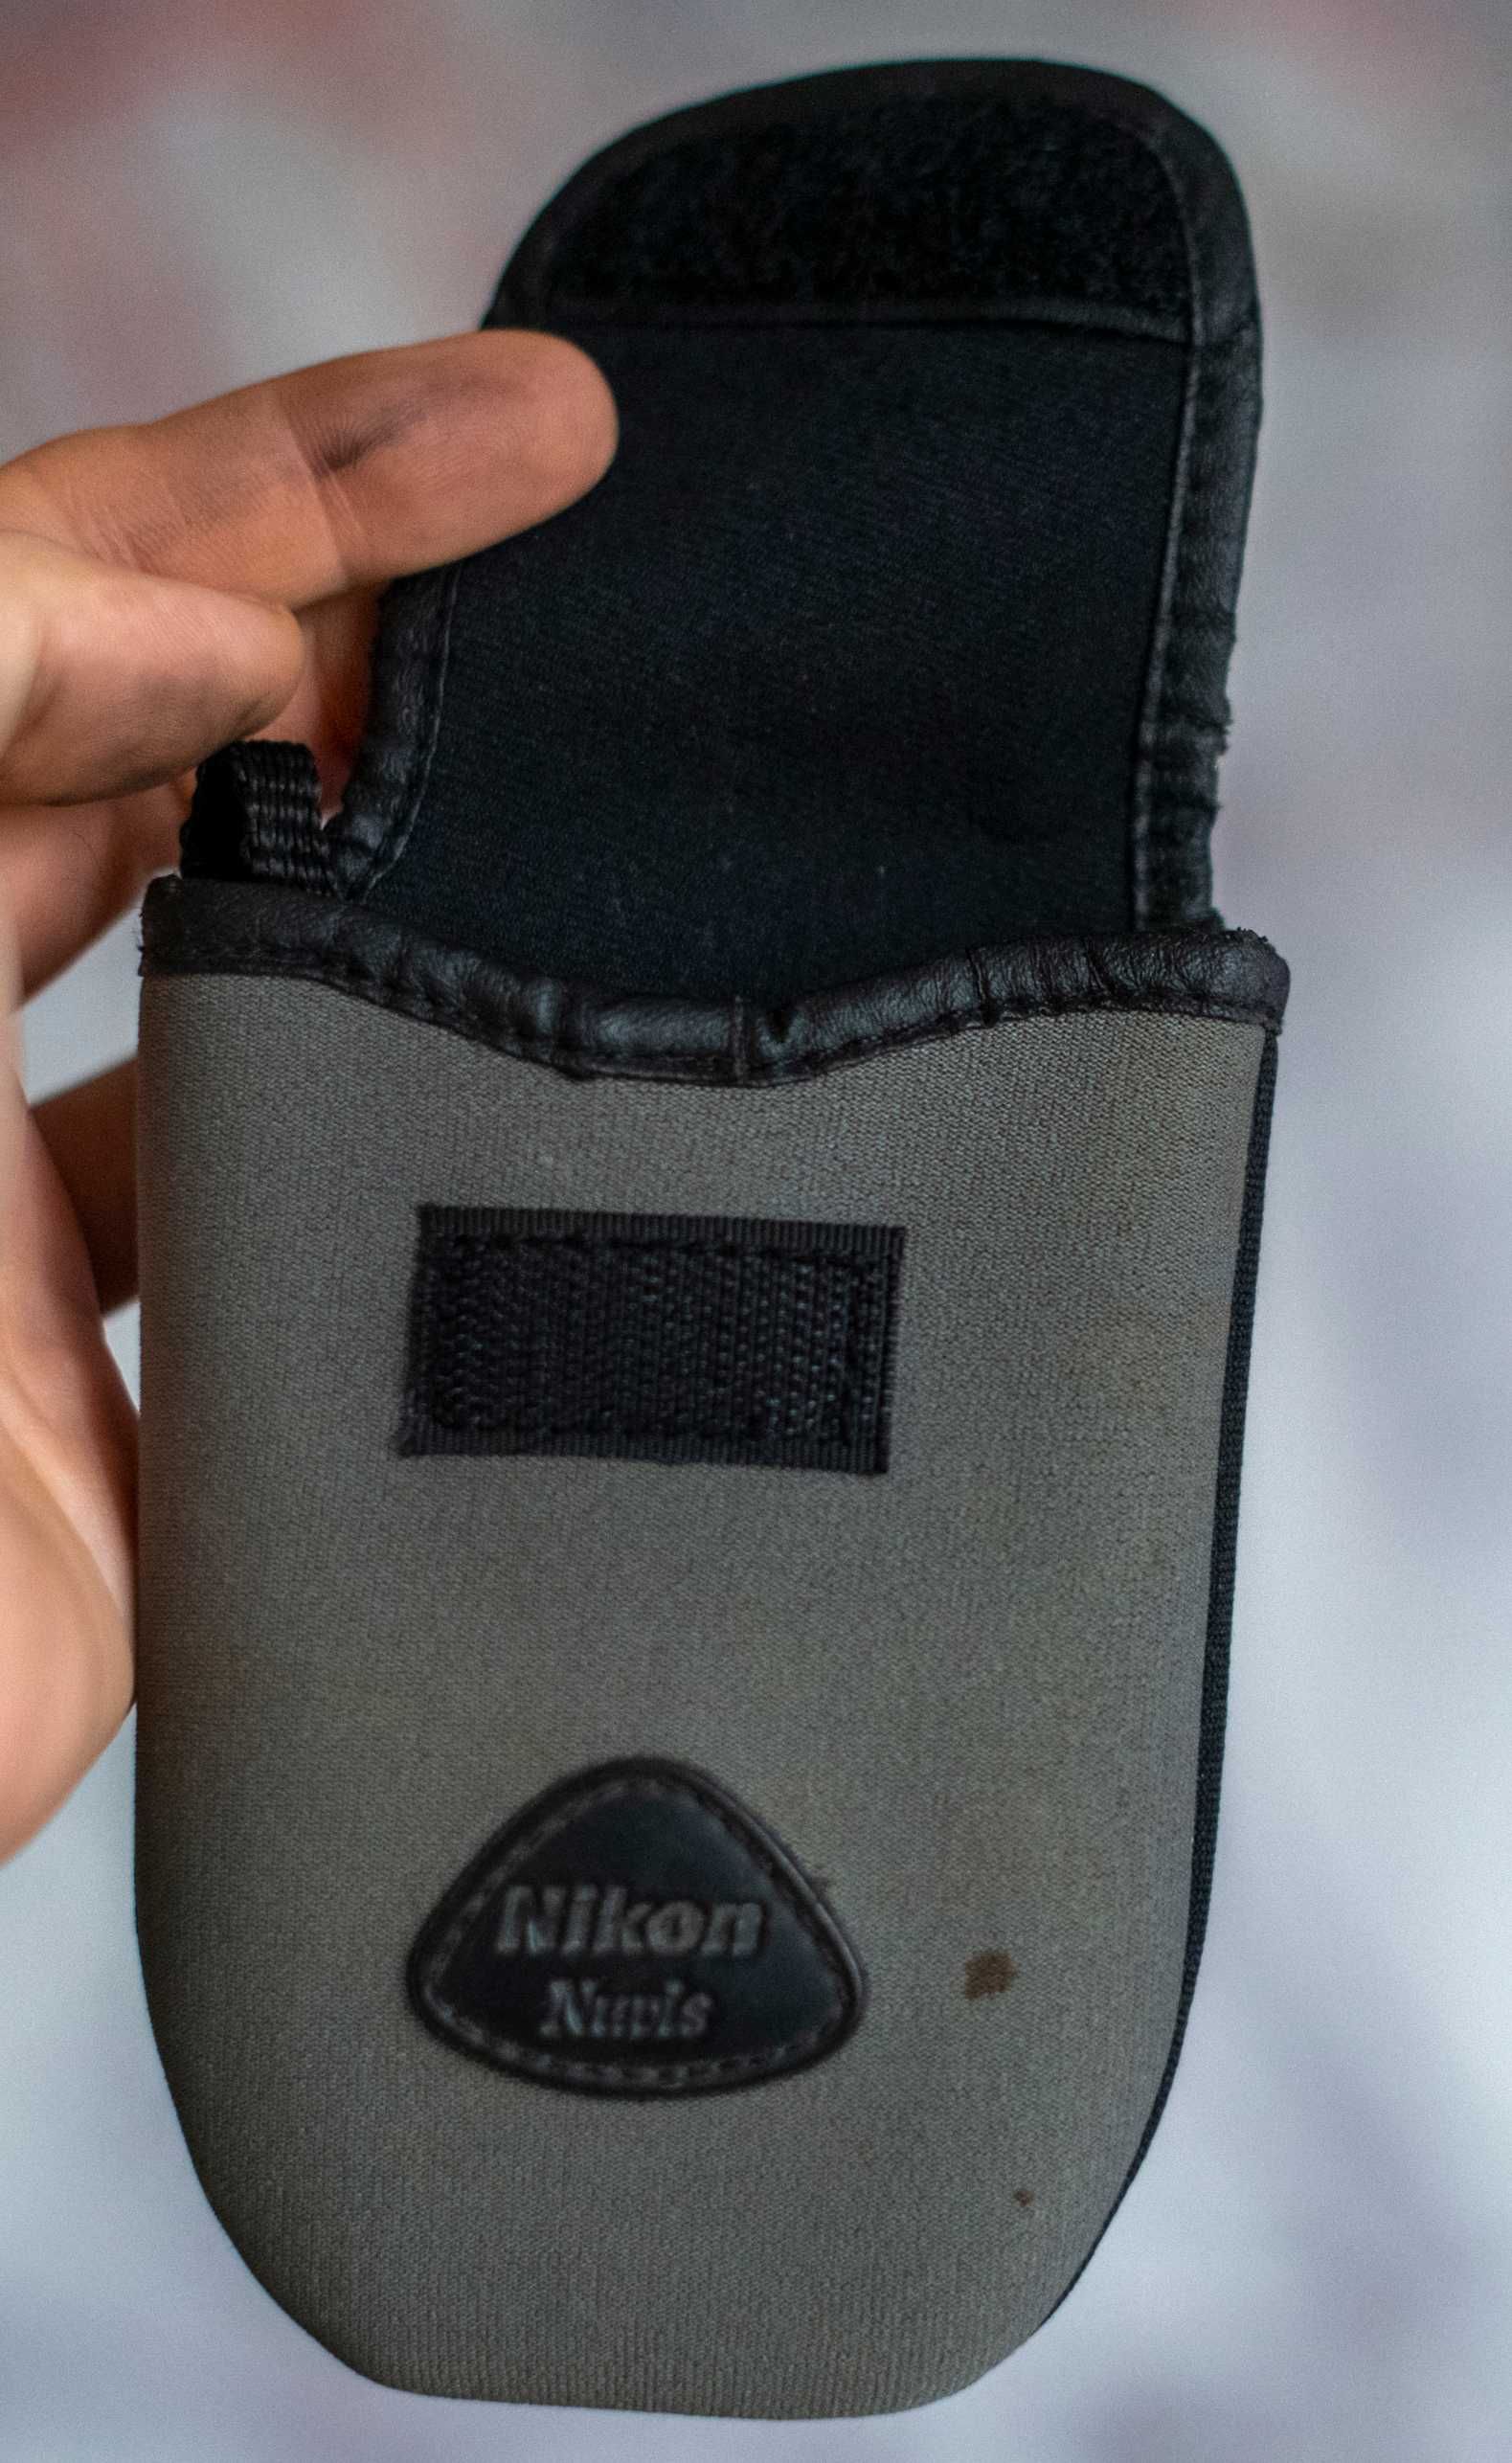 Nikon NUVIS futerał na aparat fotograficzny cyfrówka zdjęcia saszetka